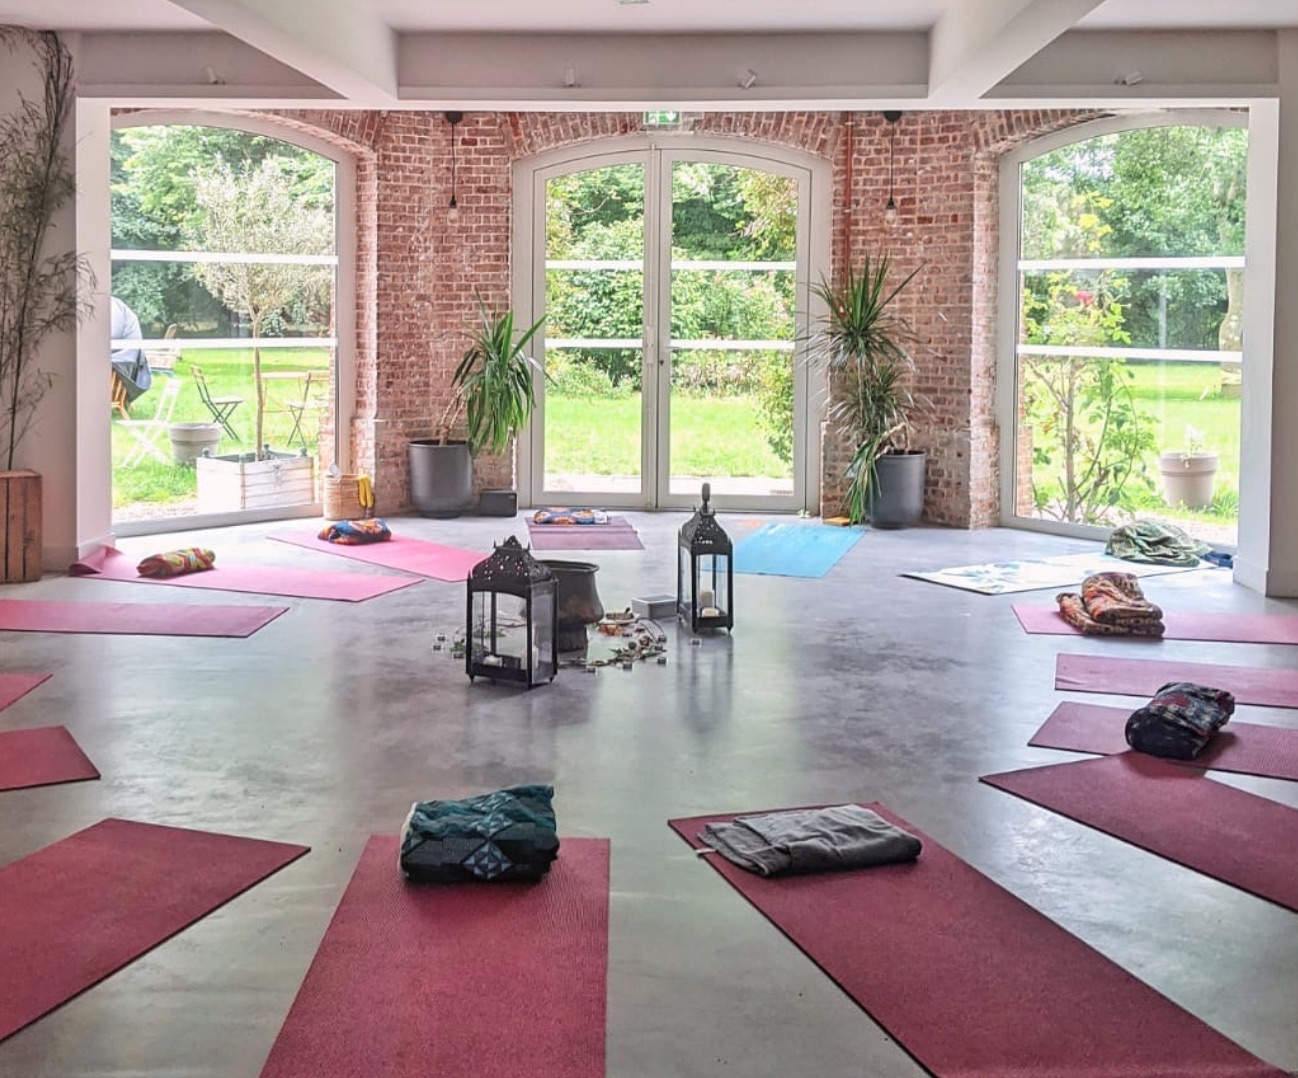 Retraite Yoga & Méditation immersive inédite au château I 4 Jours / 3 nuits en Normandie I Juillet 2022